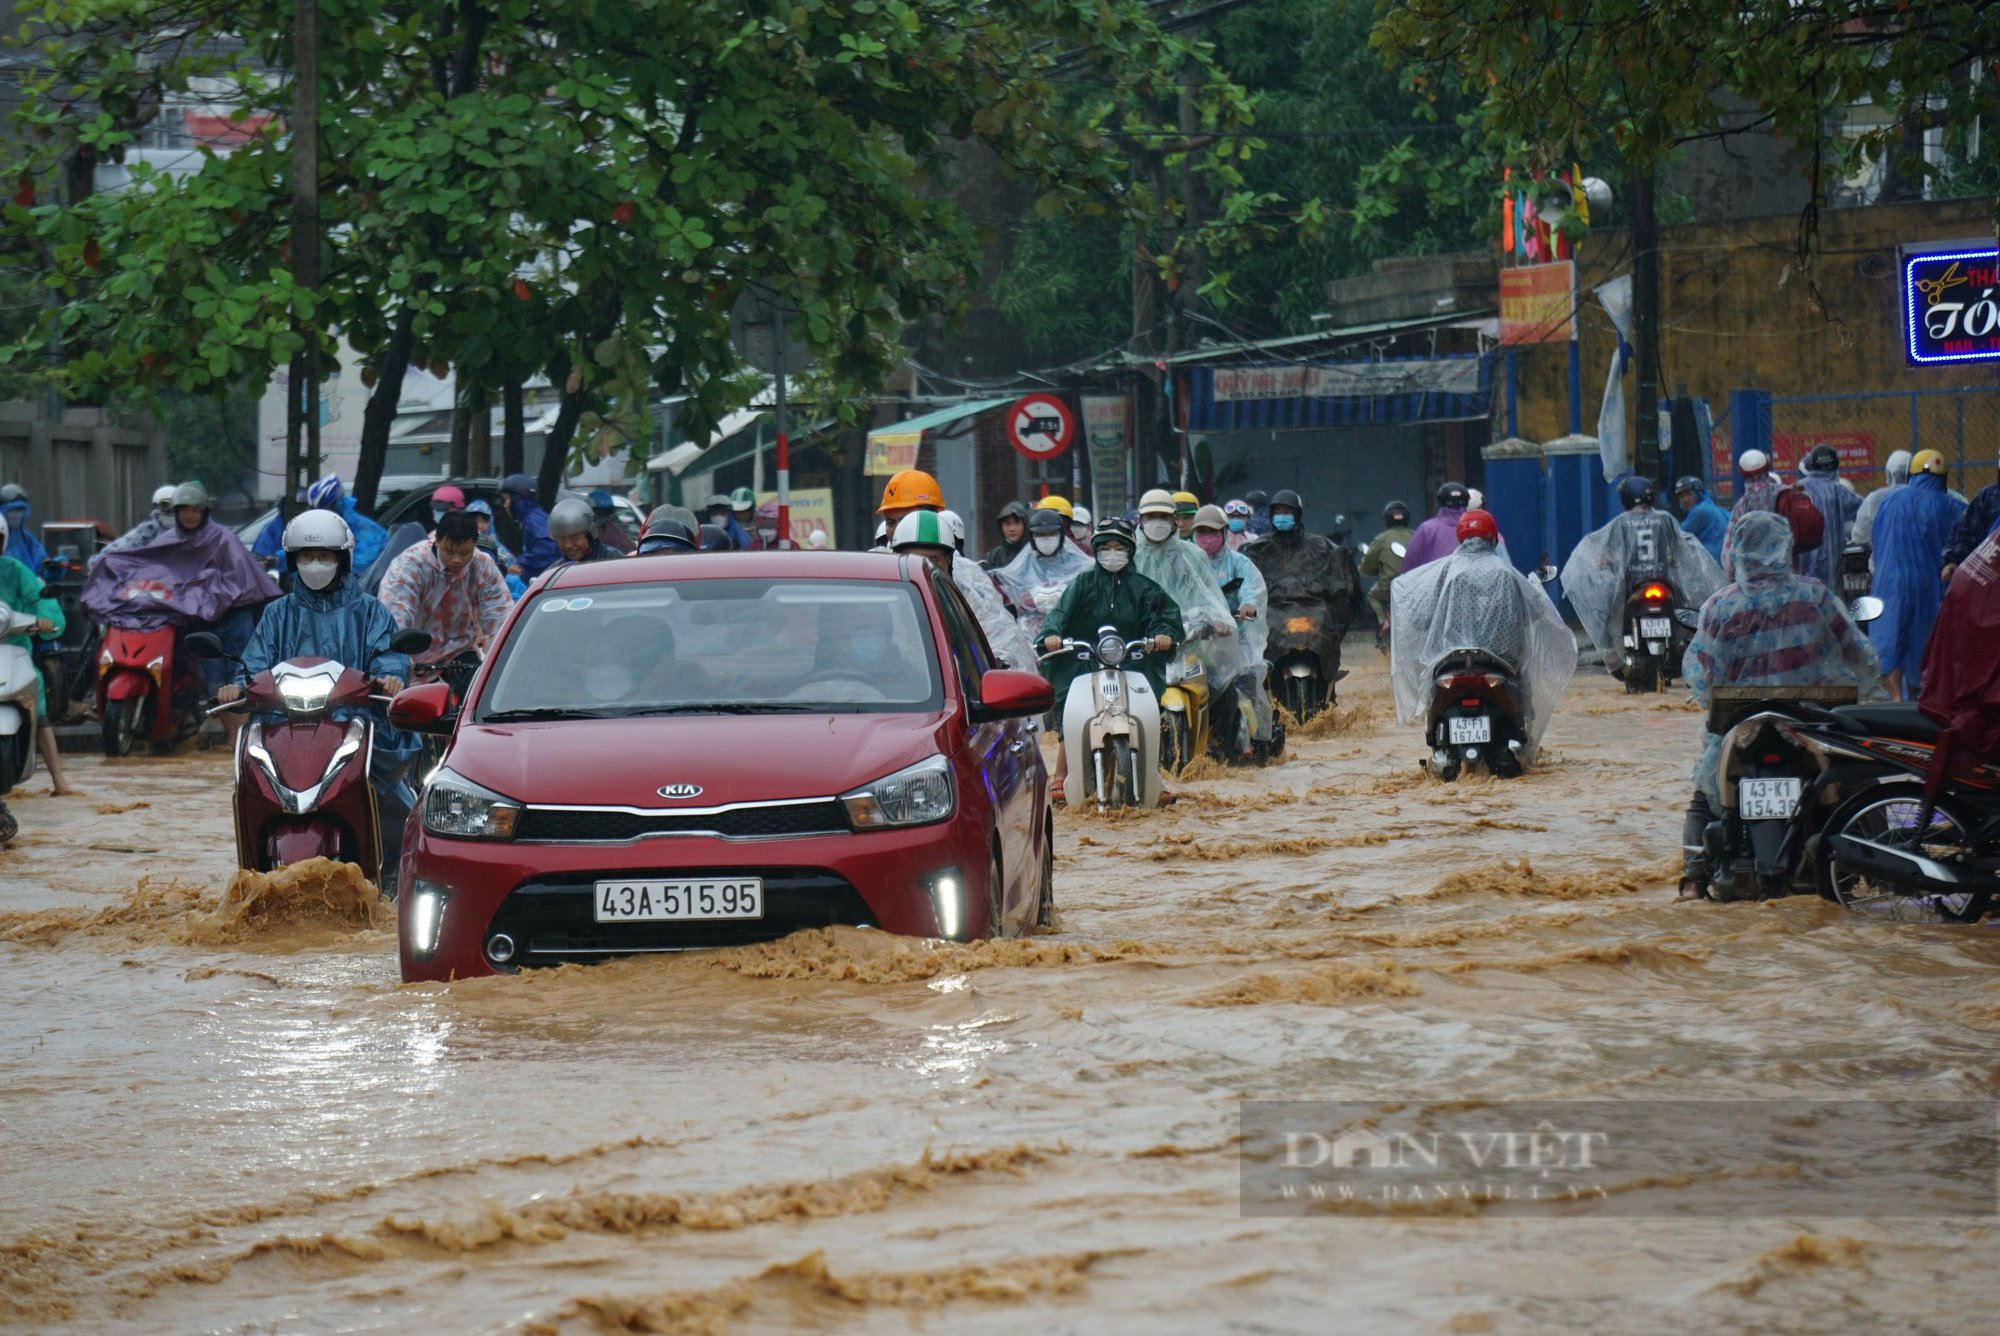 Chỉ hơn 1 tuần sau trận mưa lịch sử, Đà Nẵng lại ngập do mưa lớn - Ảnh 2.